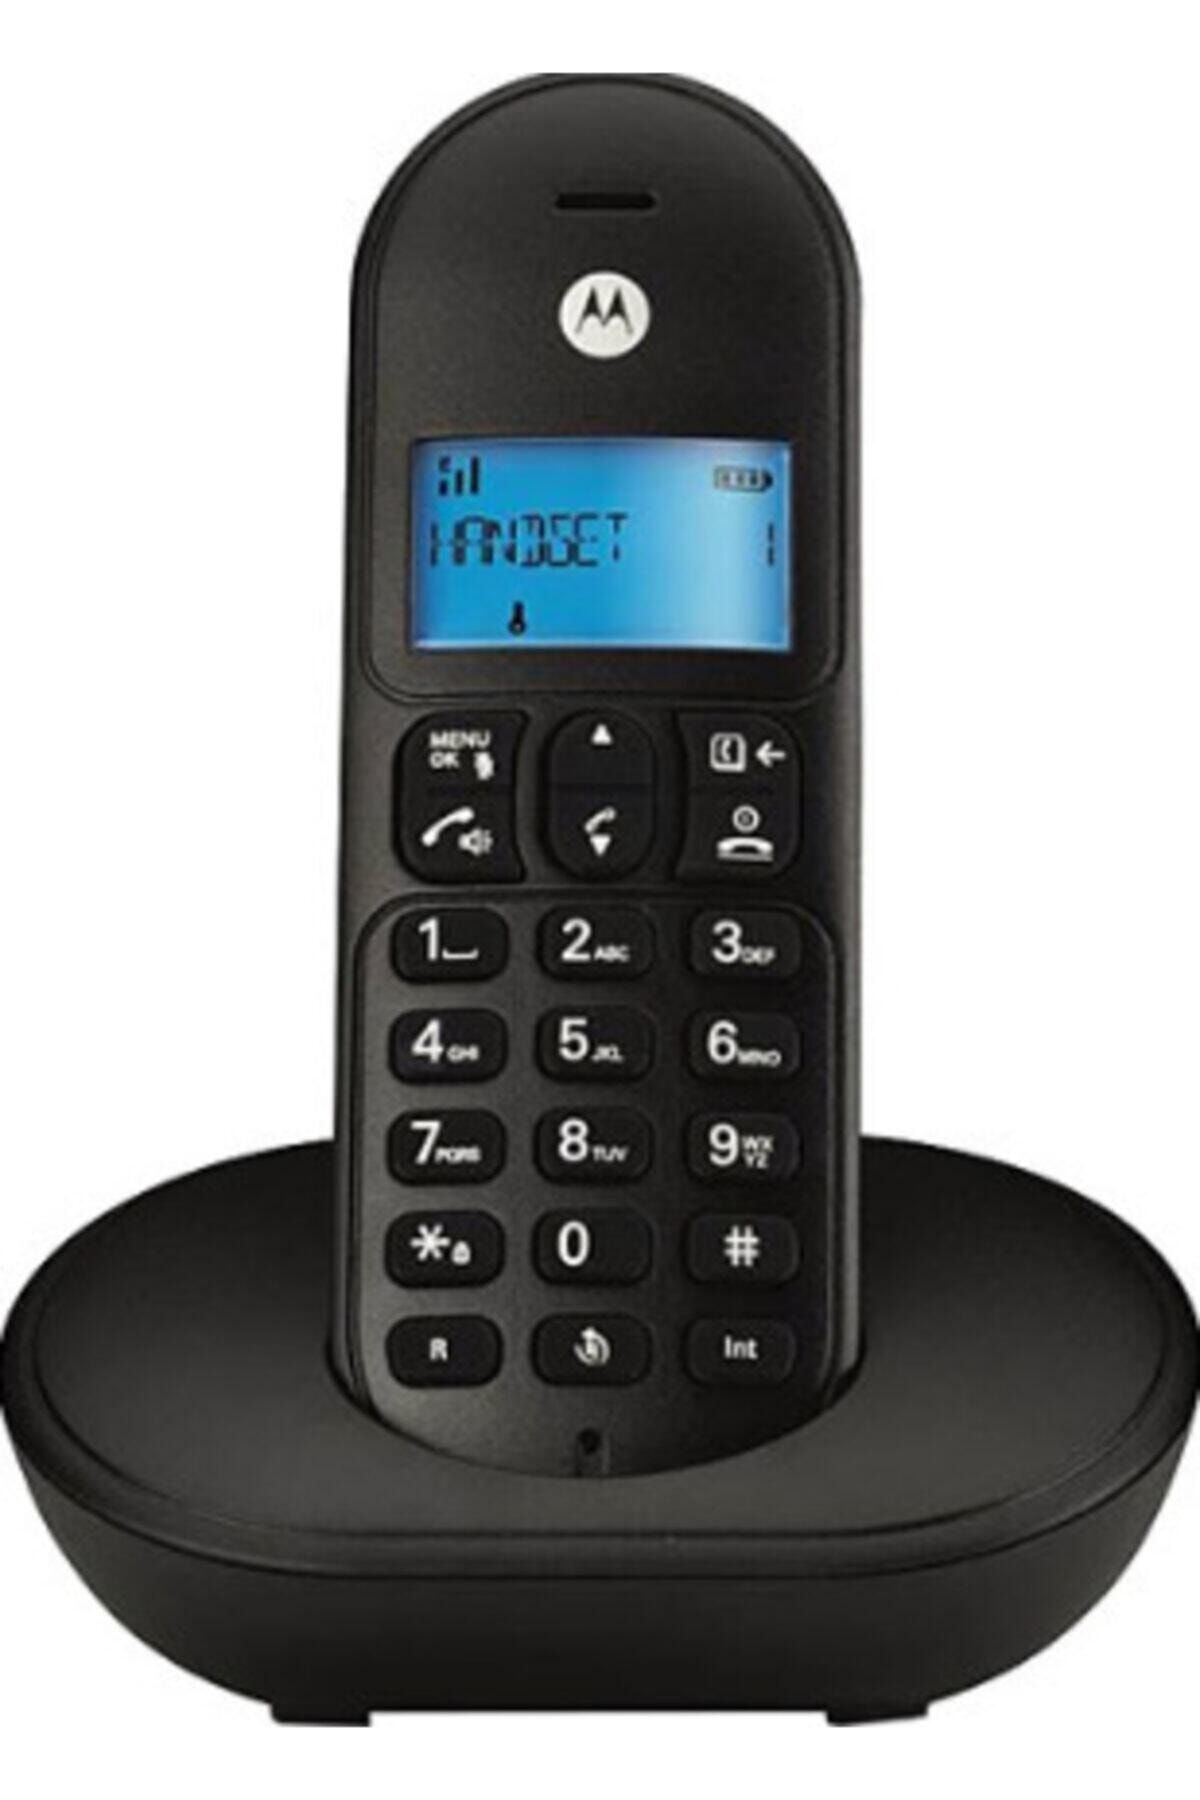 Motorola Arayan Numarayı Gösteren T101 Model Masa Telefonu